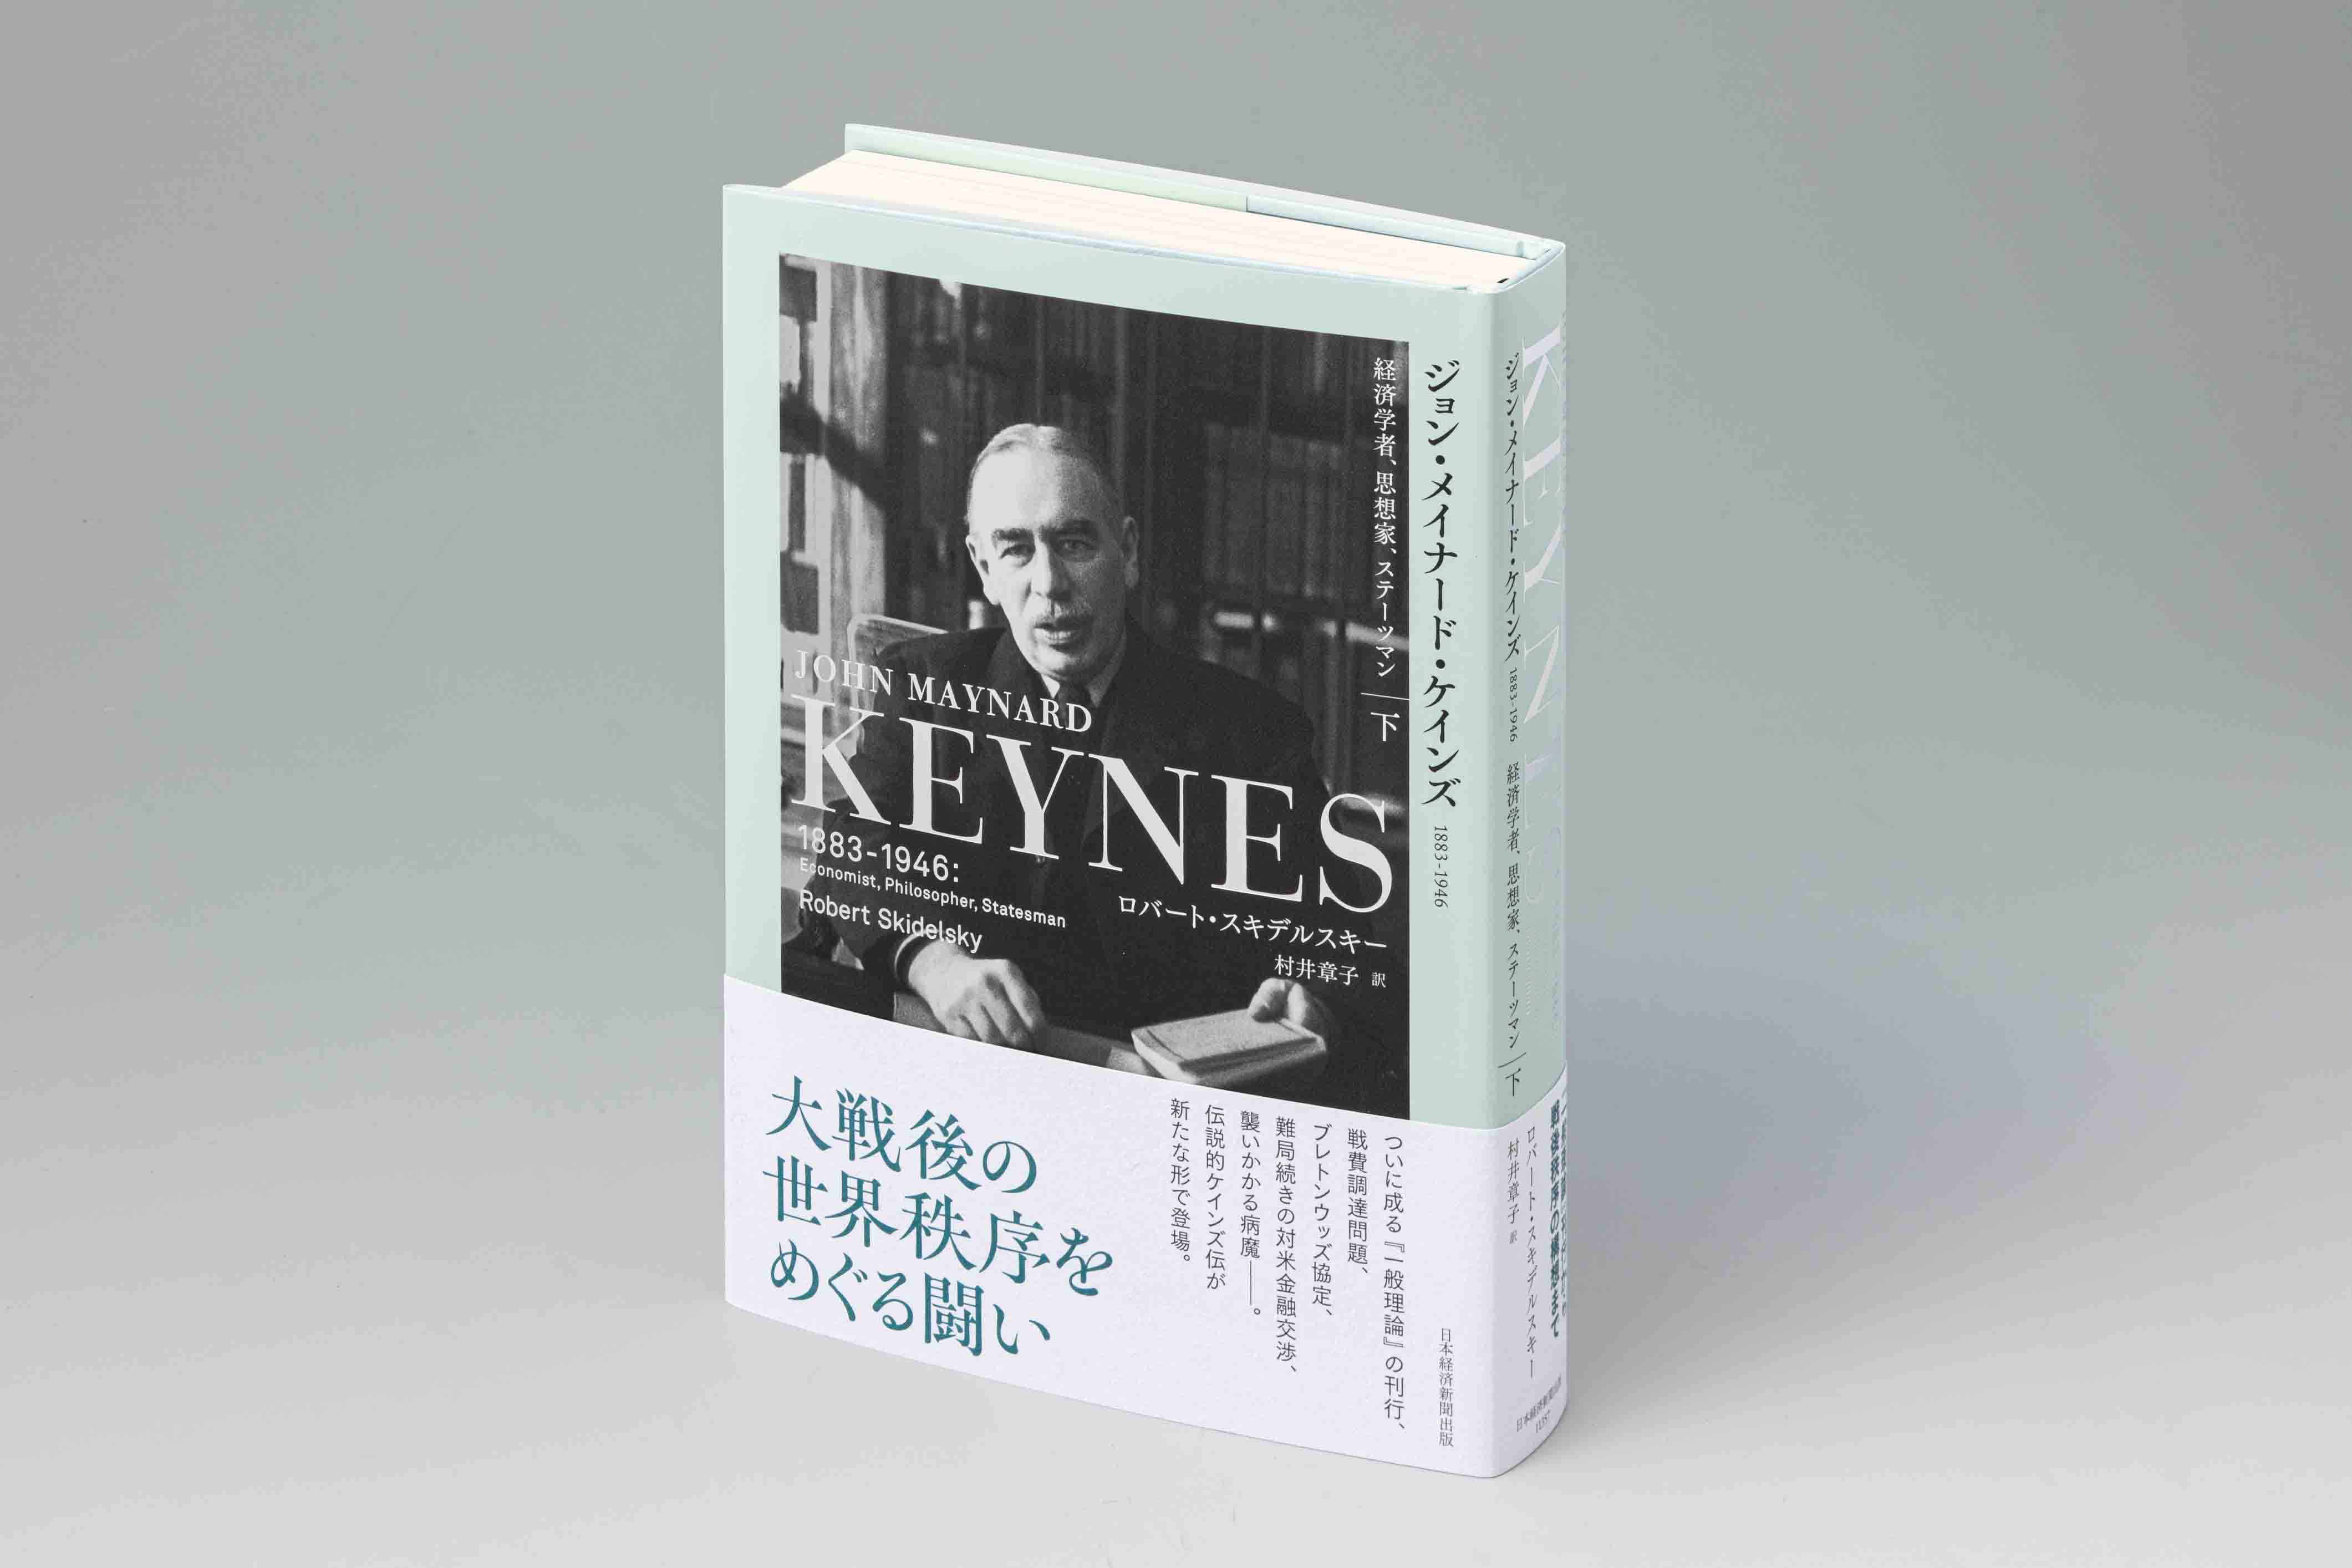 型破りの天才・ケインズ 20世紀を代表する経済学者の伝記 | 日経BOOKプラス